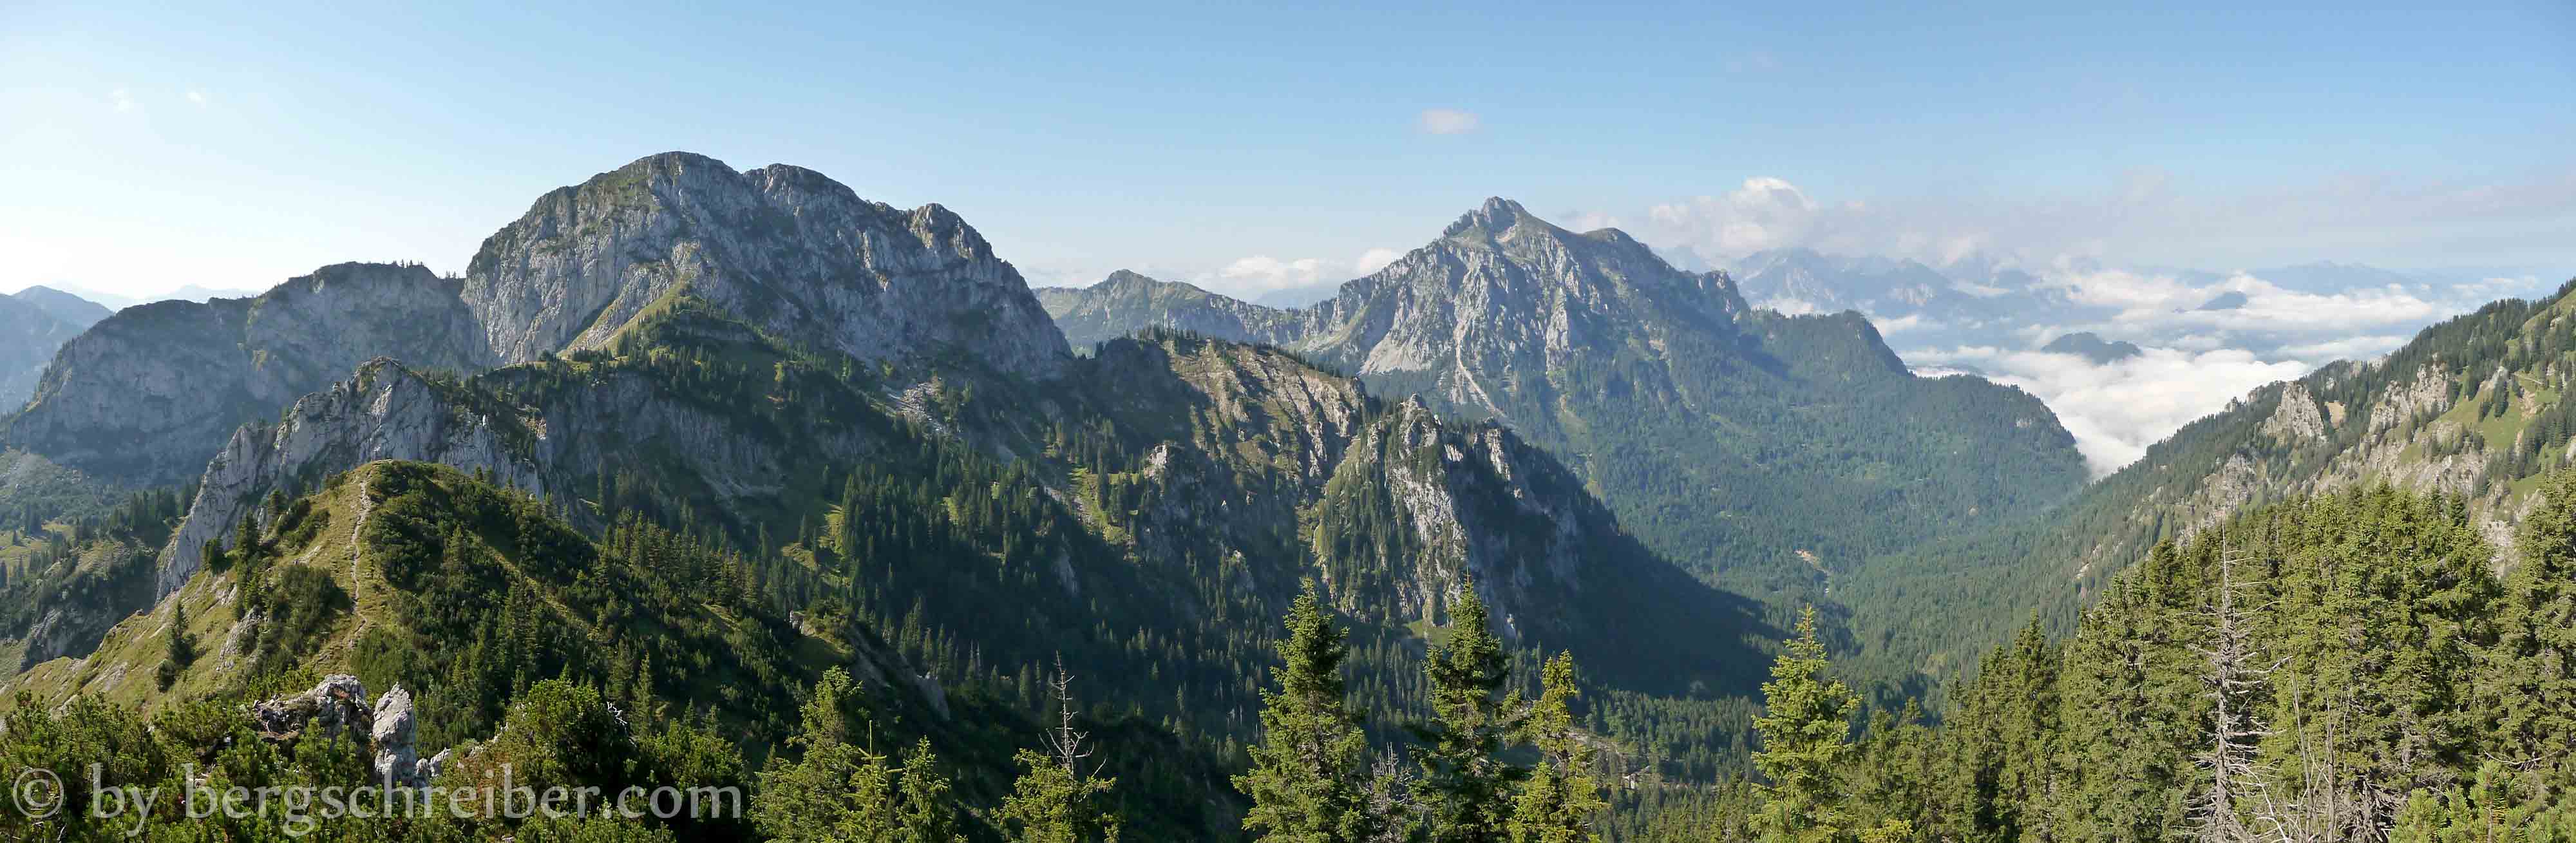 Ahornspitze Panorama: Hoher Straußberg, Säuling und die Hochnebeldecke im Voralpenland